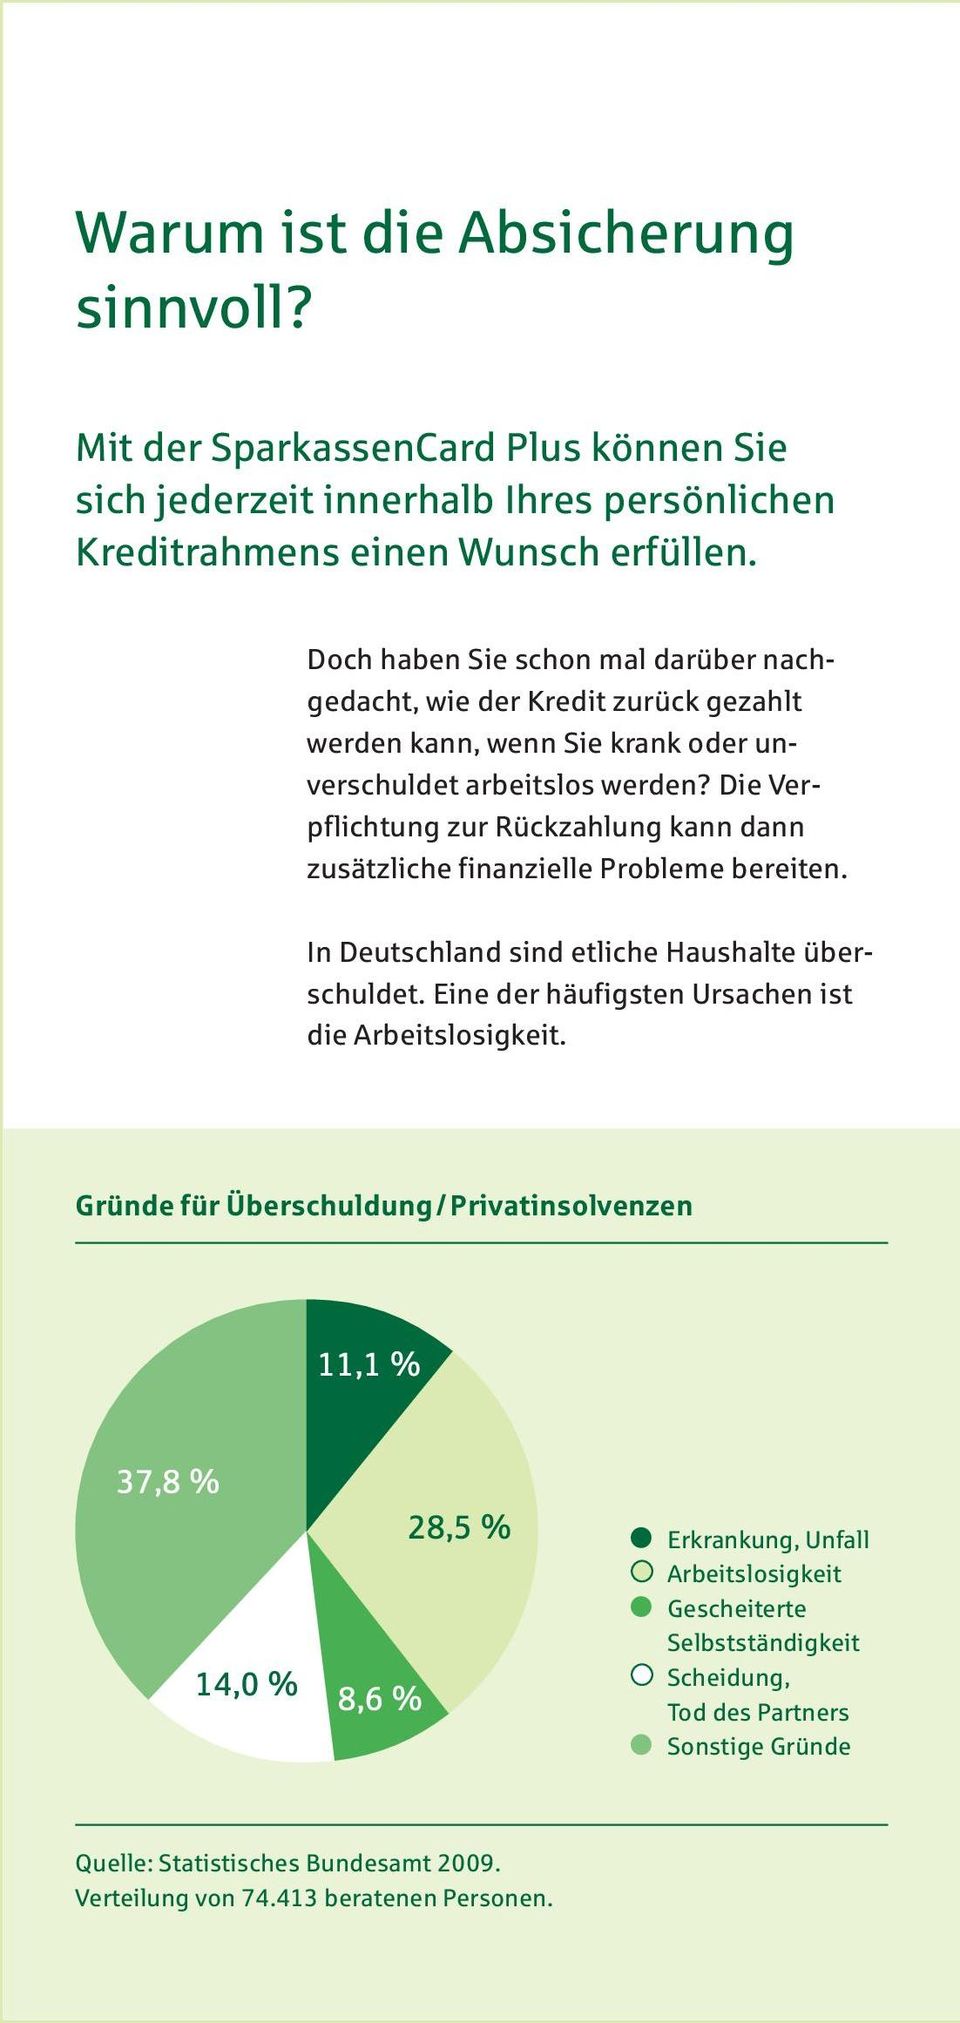 Die Verpflichtung zur Rückzahlung kann dann zusätzliche finanzielle Probleme bereiten. In Deutschland sind etliche Haushalte überschuldet.